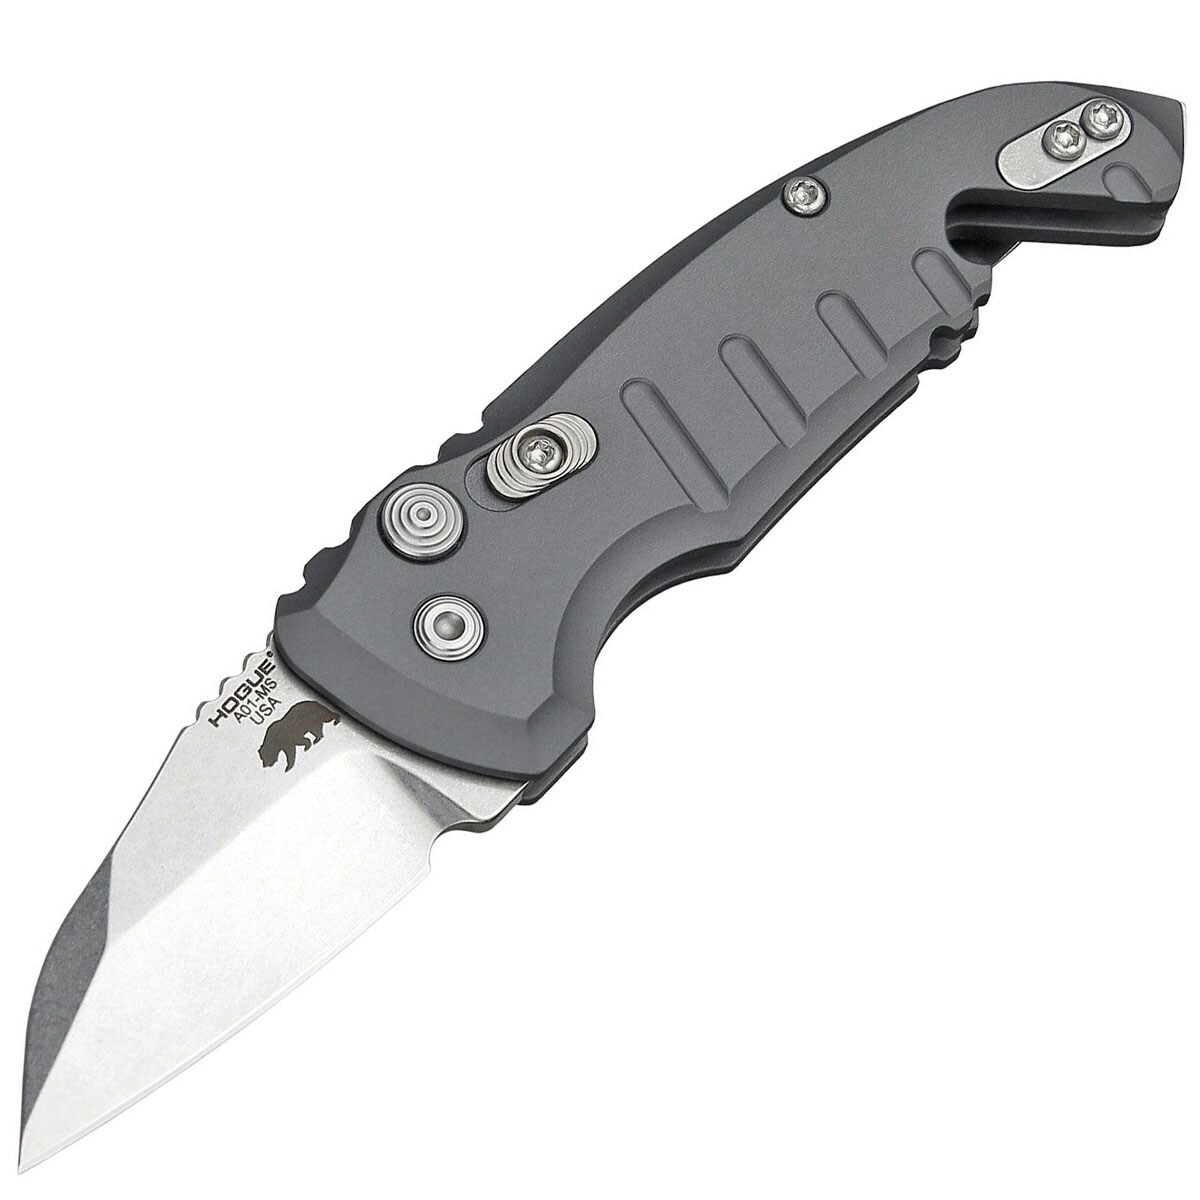 Nóż sprężynowy Hogue A01 Microswitch Compact Wharncliffe - Grey